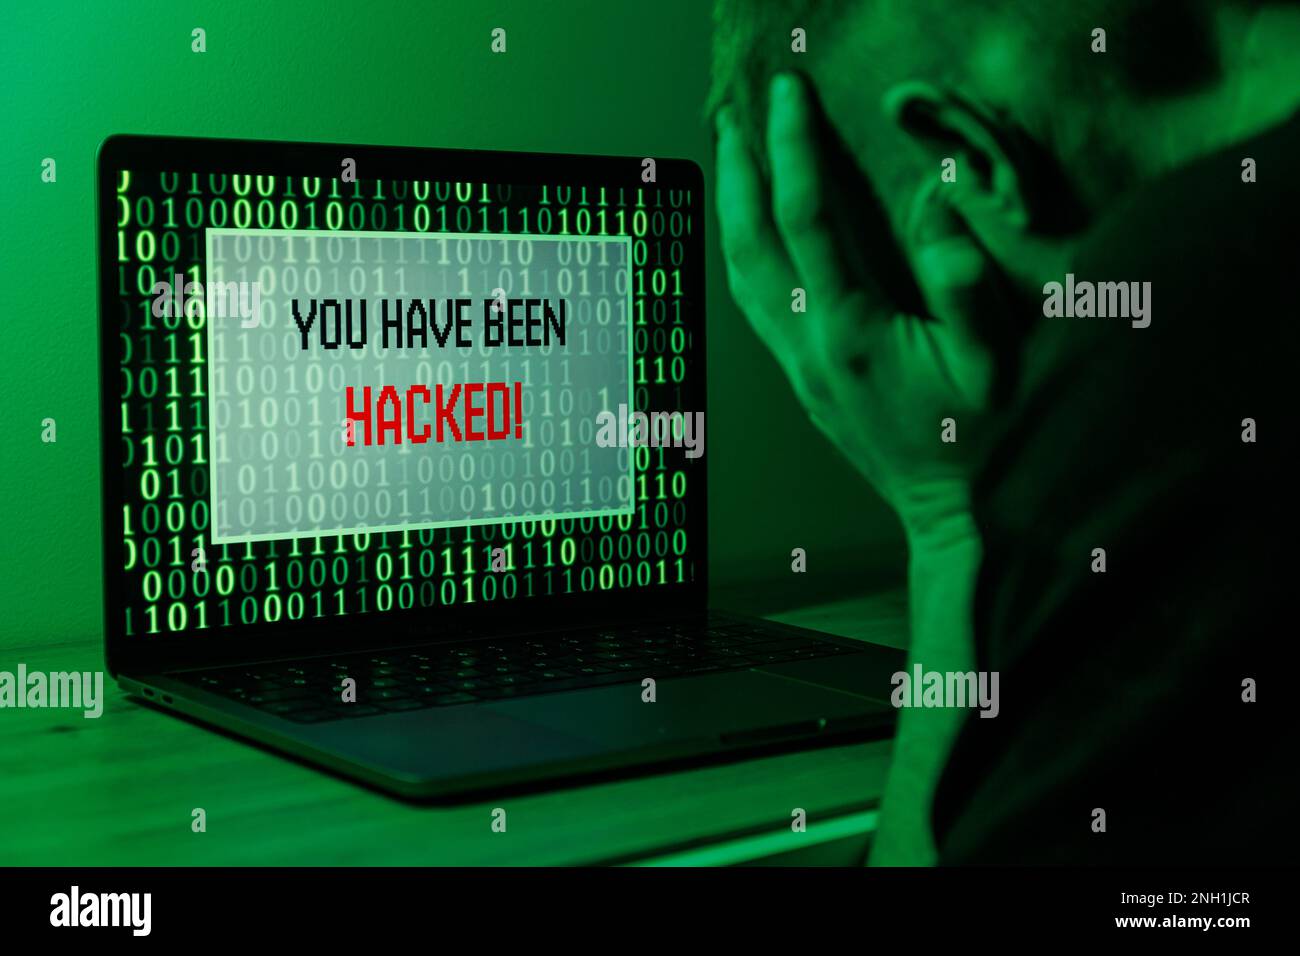 Hacker-Angriff auf den Computer. Warntext auf dem PC: Sie wurden gehackt Stockfoto